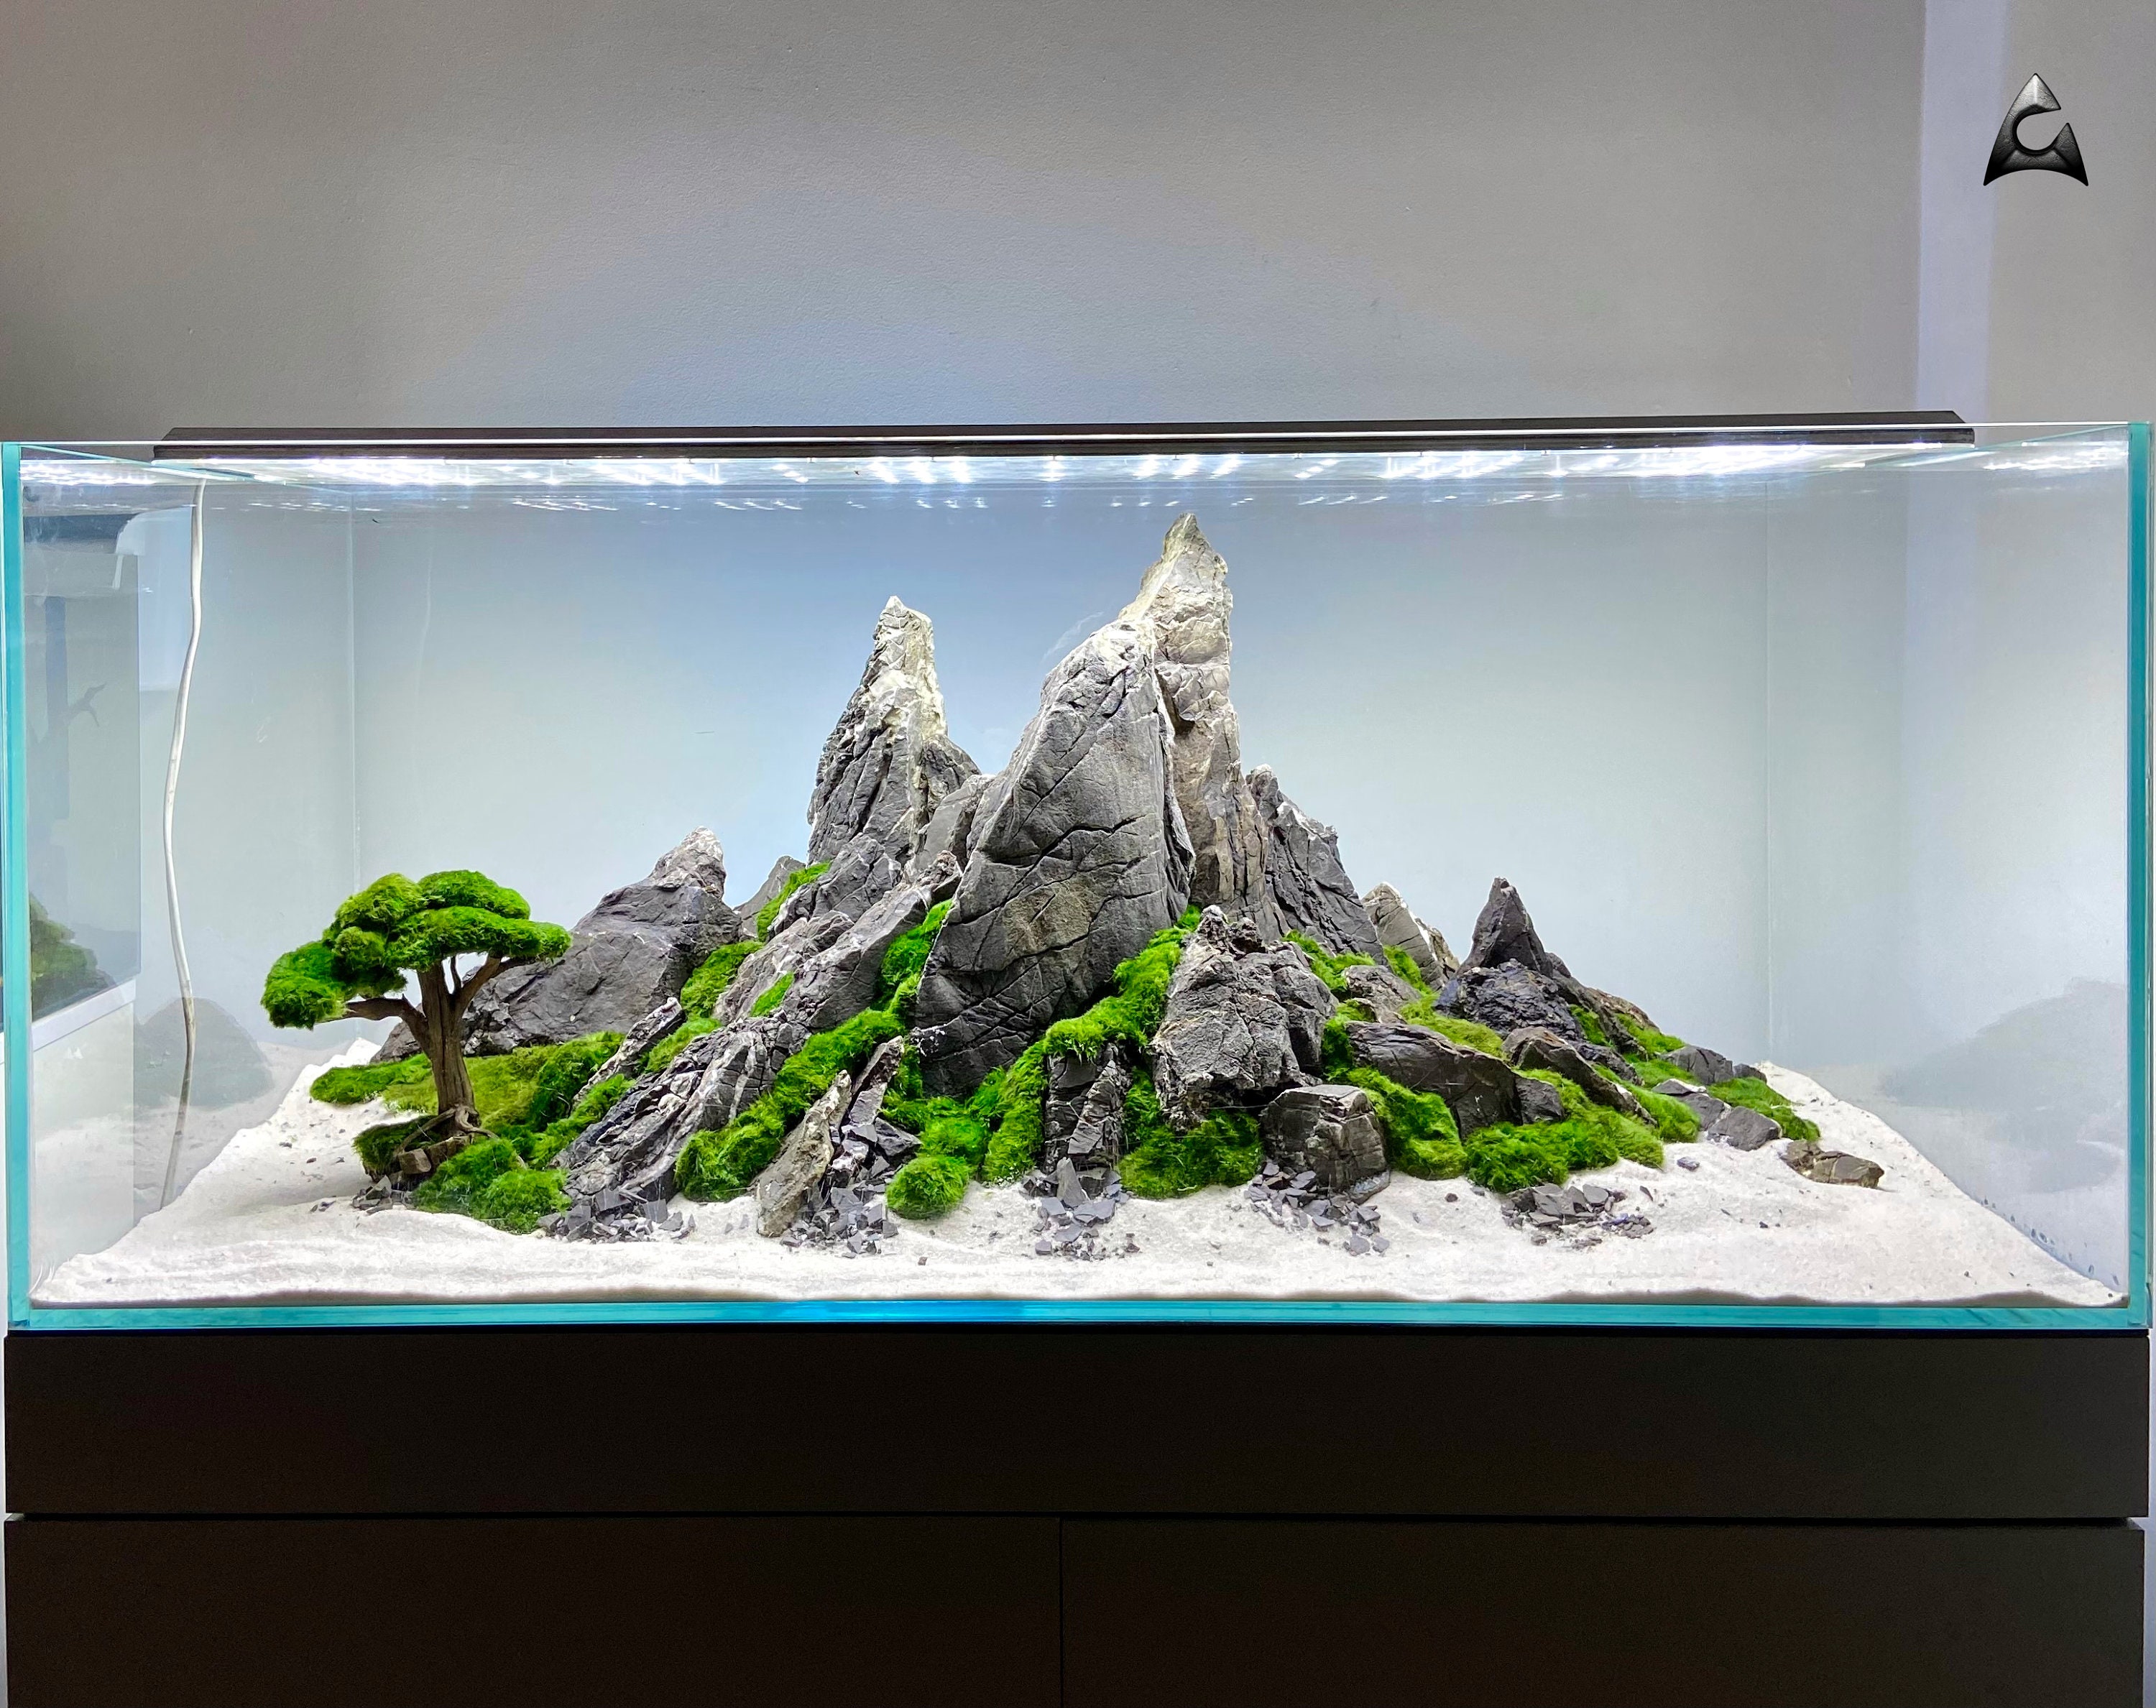 Idées de Décorations Naturelles pour son Aquarium